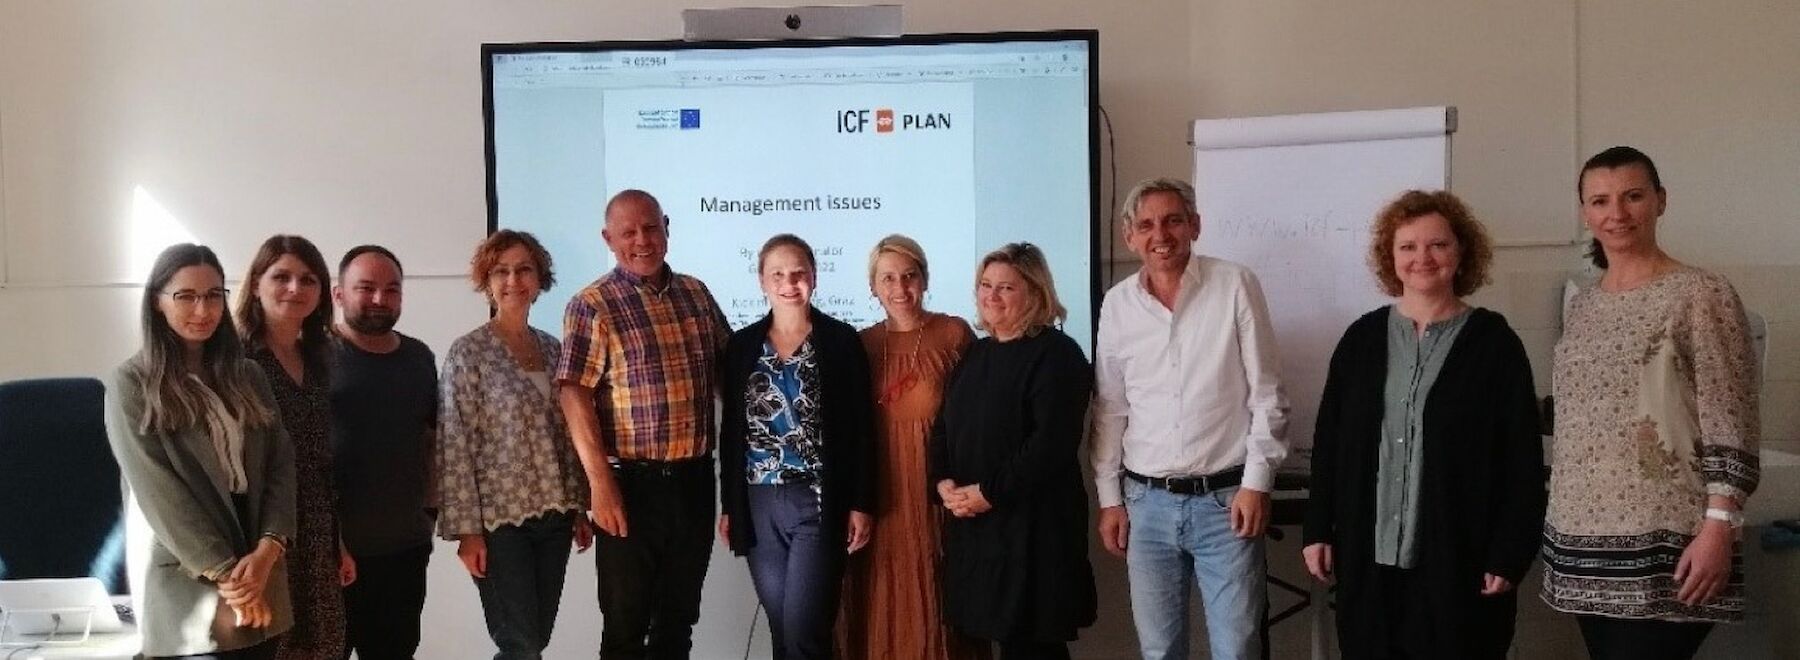 Erasmus+ Projekt „Plan-ICF”  -   Kick-Off Meeting für das internationale Projektteam